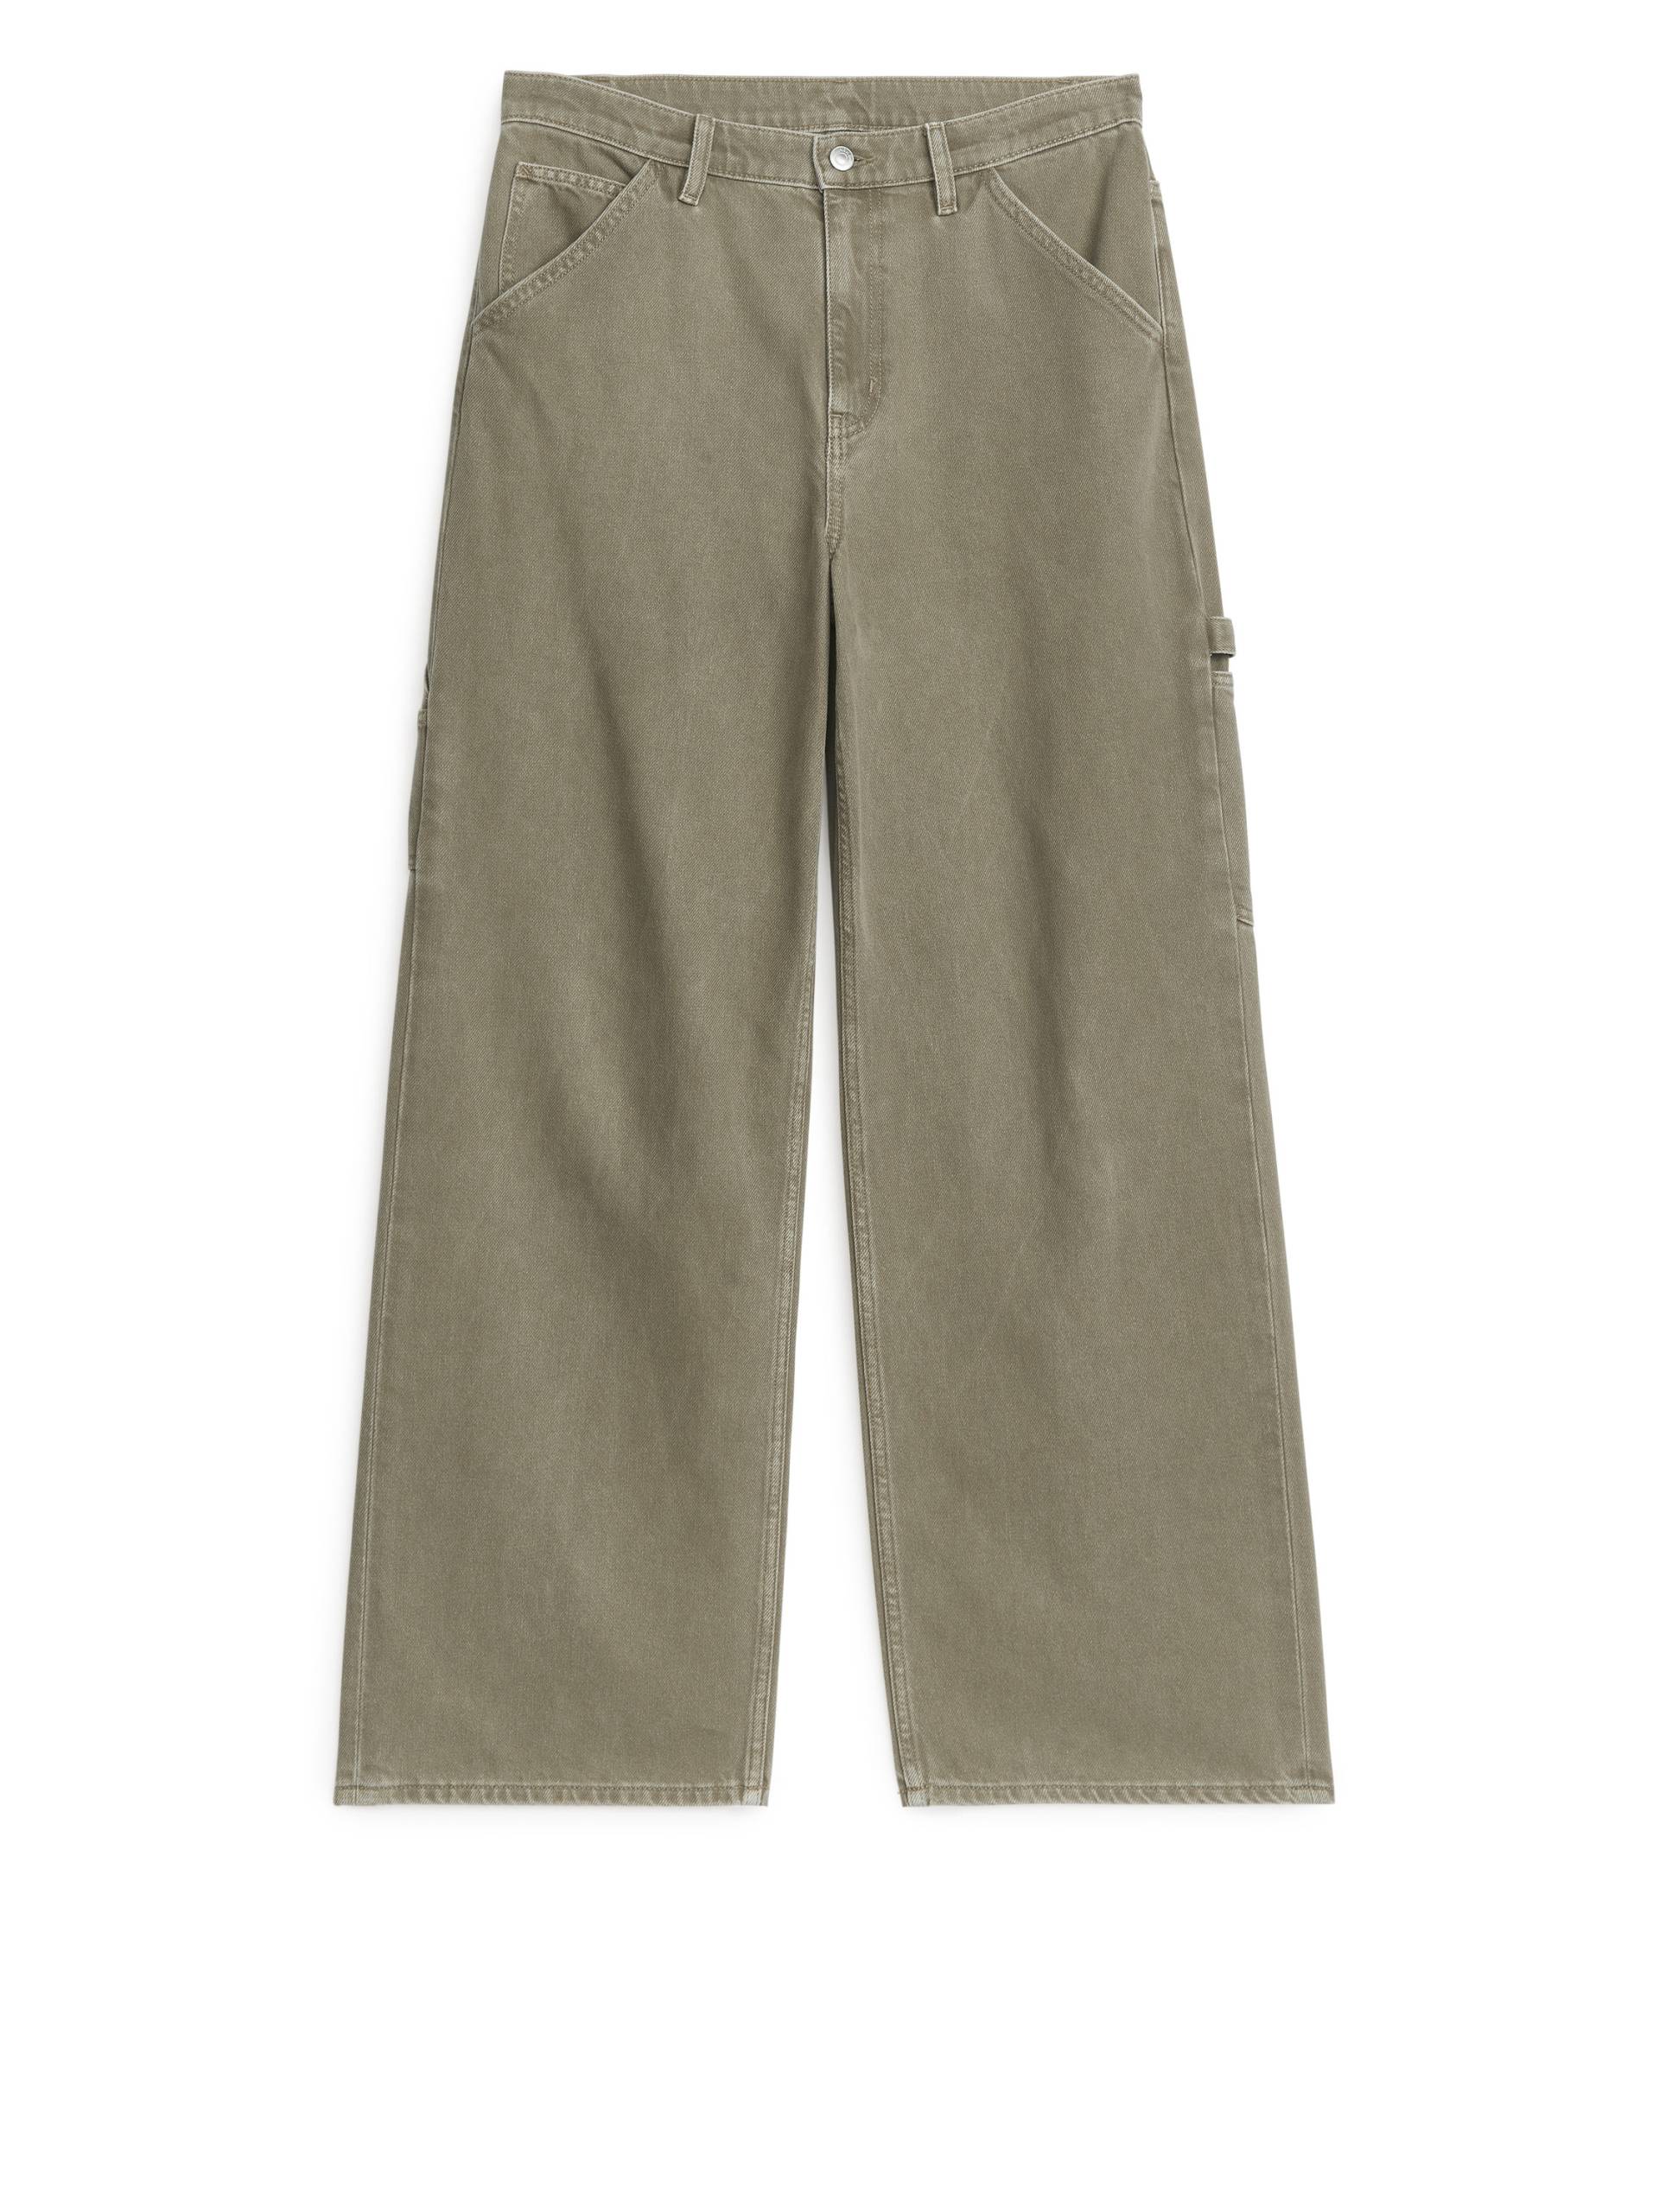 Arket WILLOW Loose Jeans Dunkelbeige, Baggy in Größe 42. Farbe: Dark beige von Arket